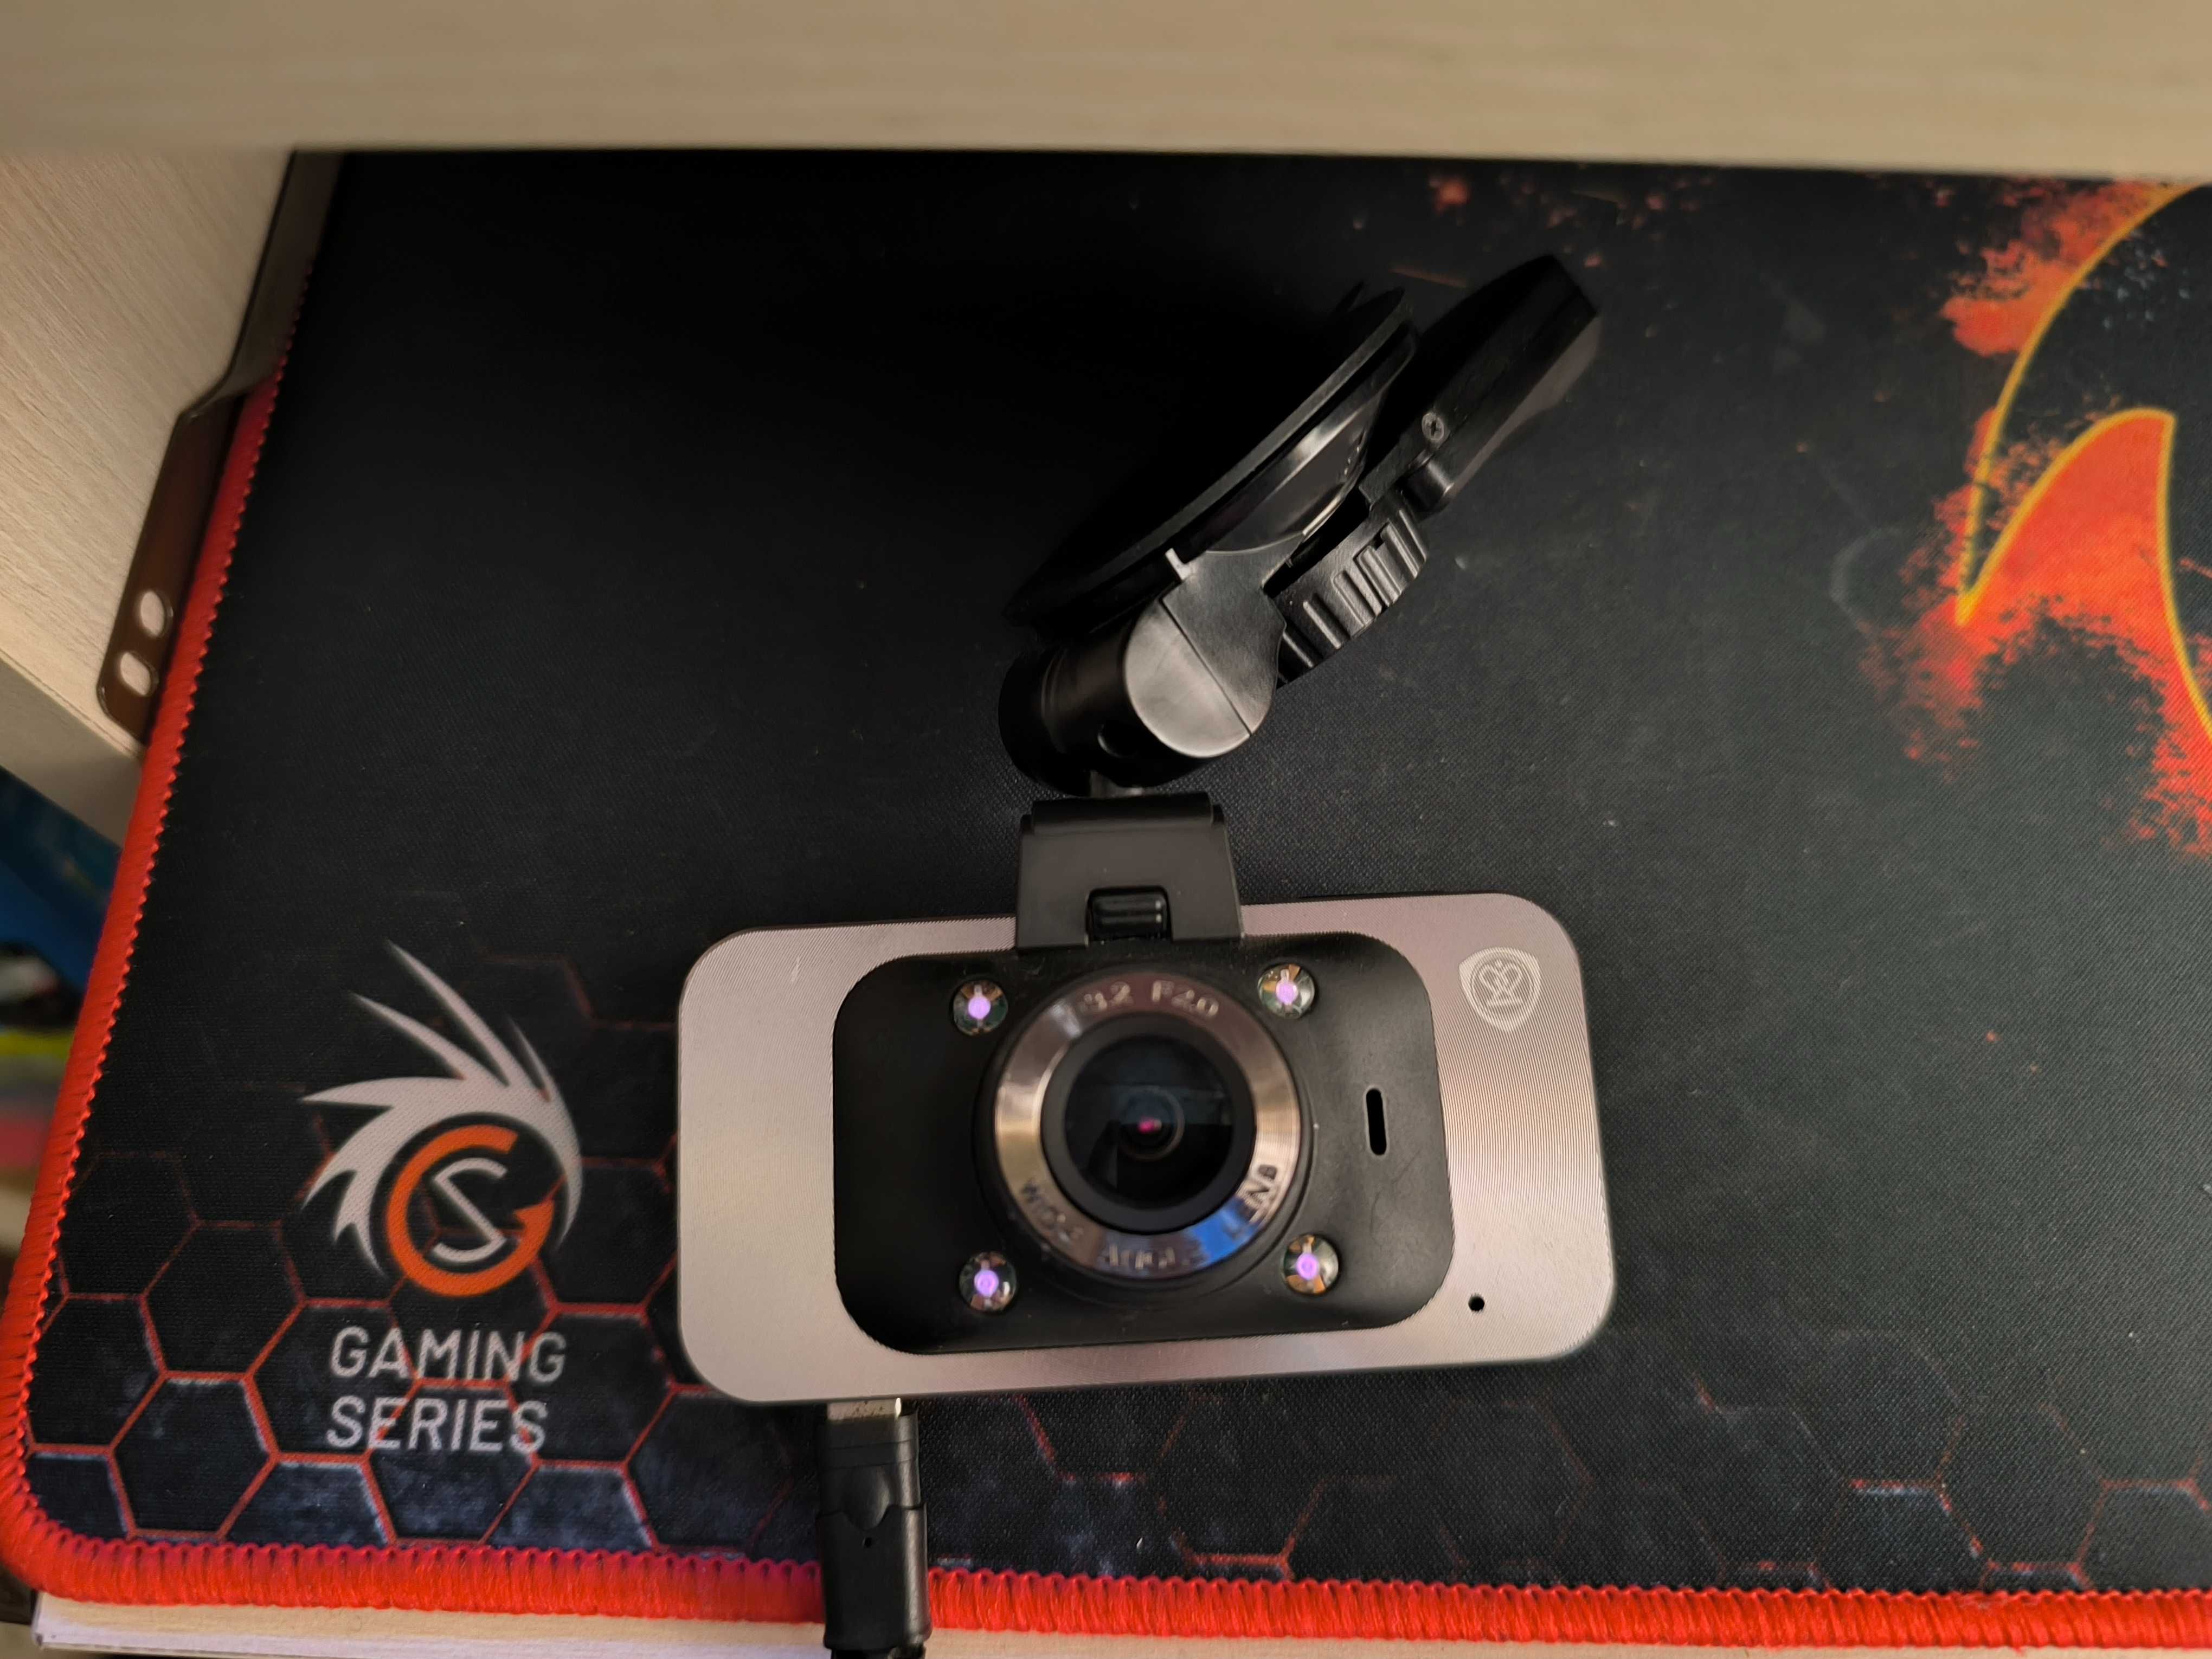 Camera auto DVR Prestigio RoadRunner 545 GPS, Full HD